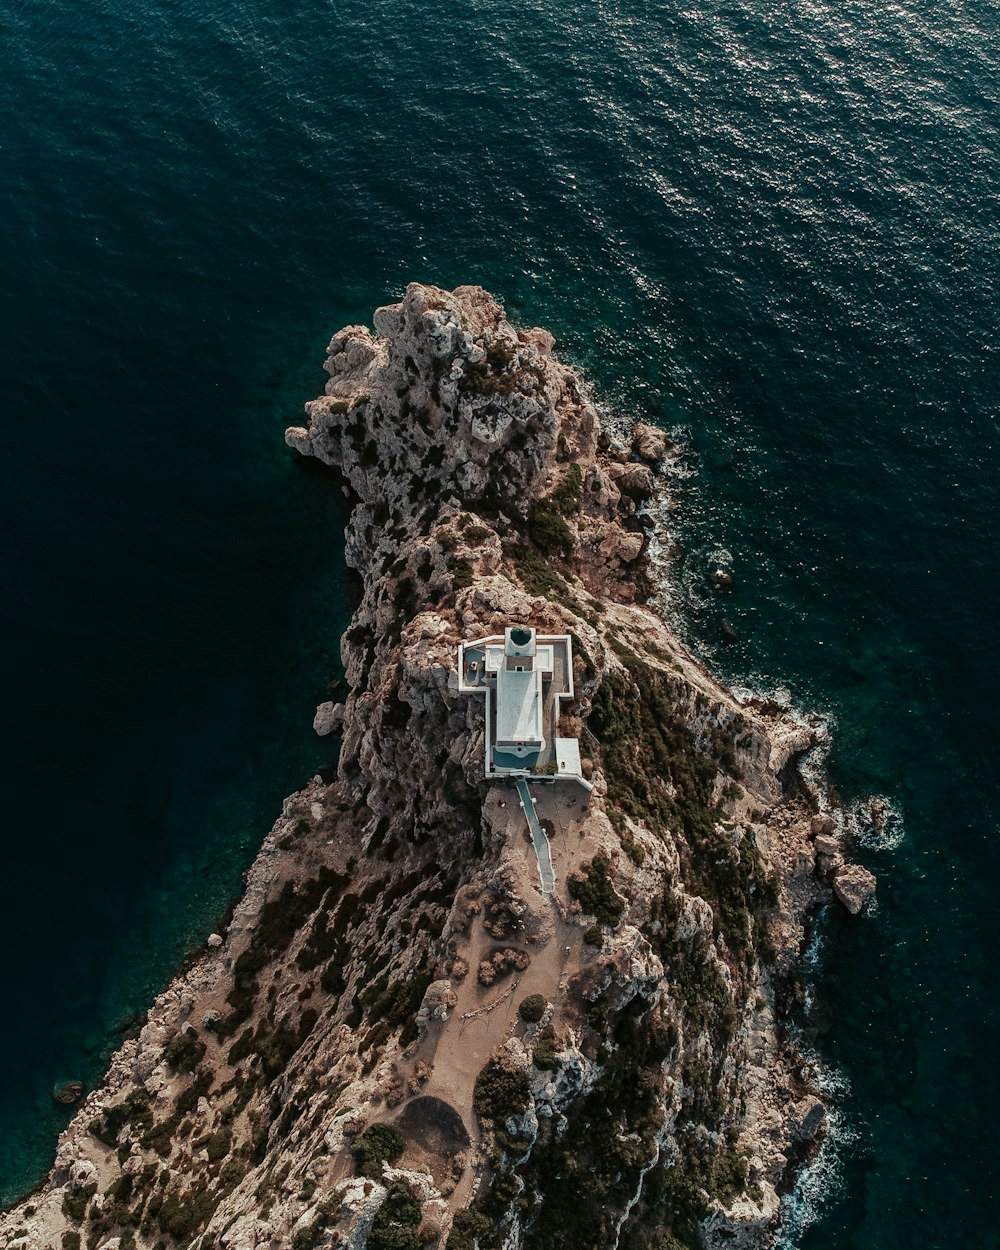 Vue aérienne d’une maison sur une île rocheuse au milieu de l’océan